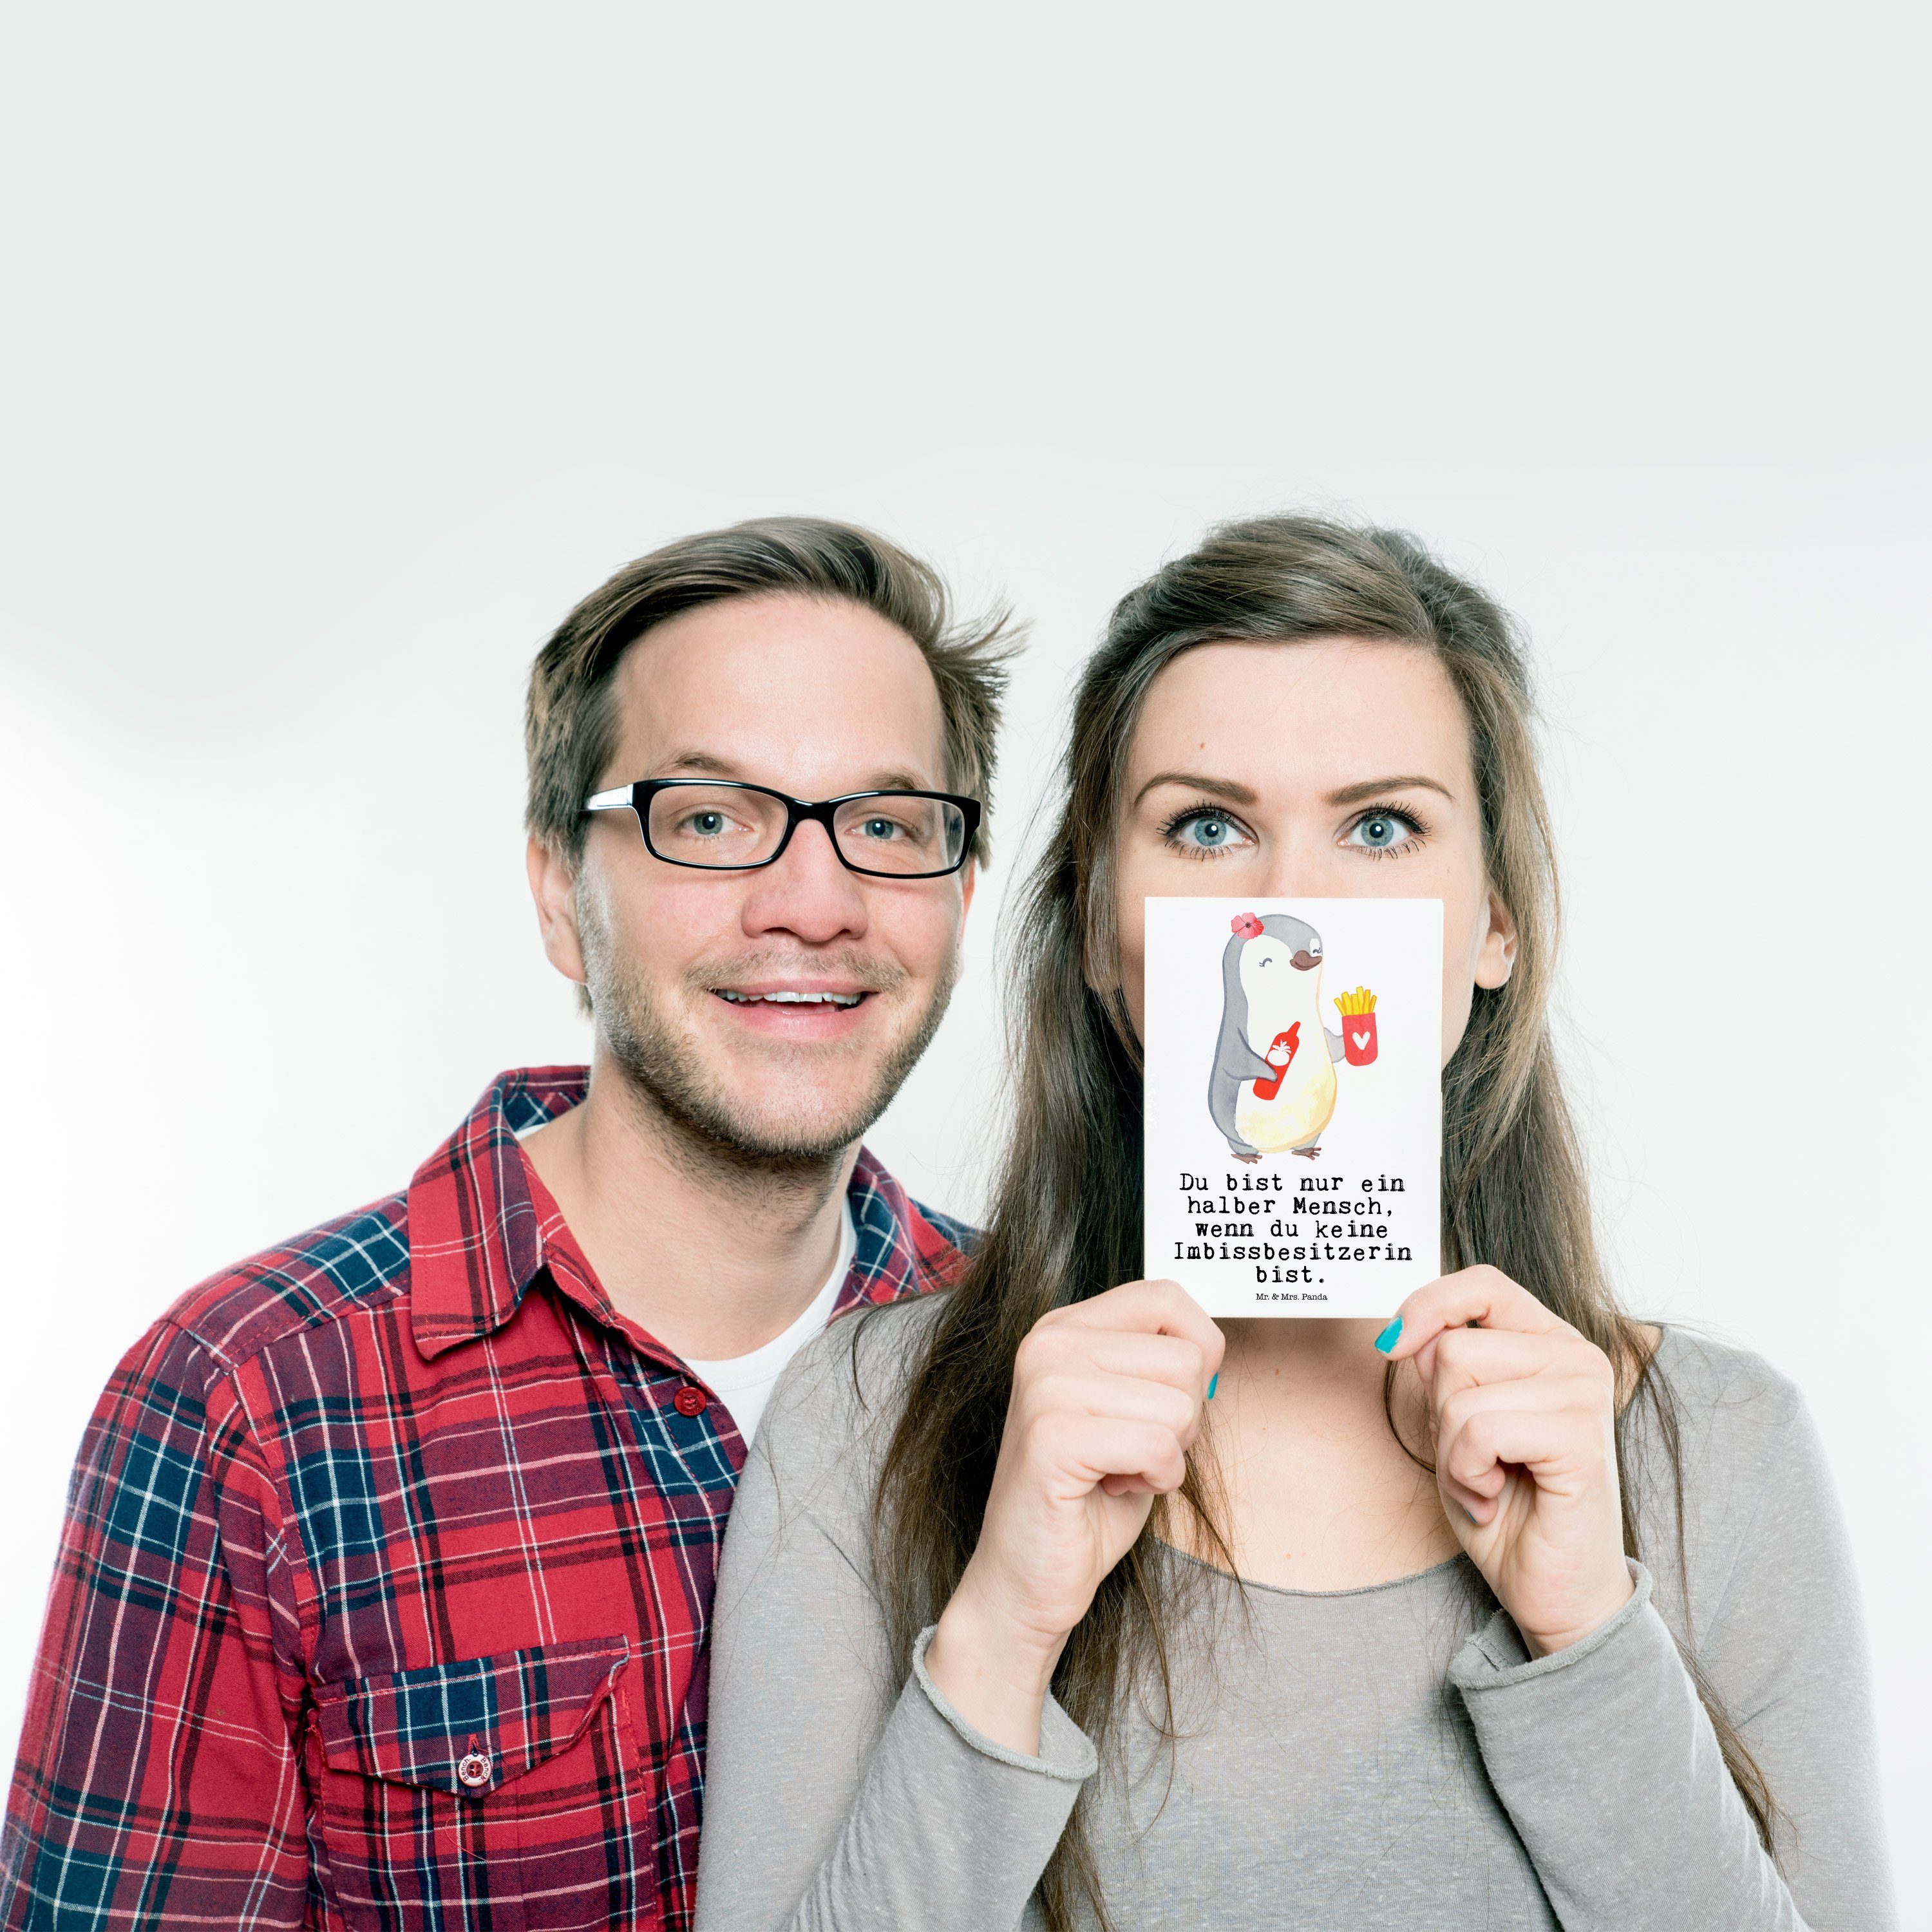 Mr. & Mrs. Panda Postkarte mit Herz Weiß Imbissbesitzerin - Imibissverkäuferin, Gebu Geschenk, 